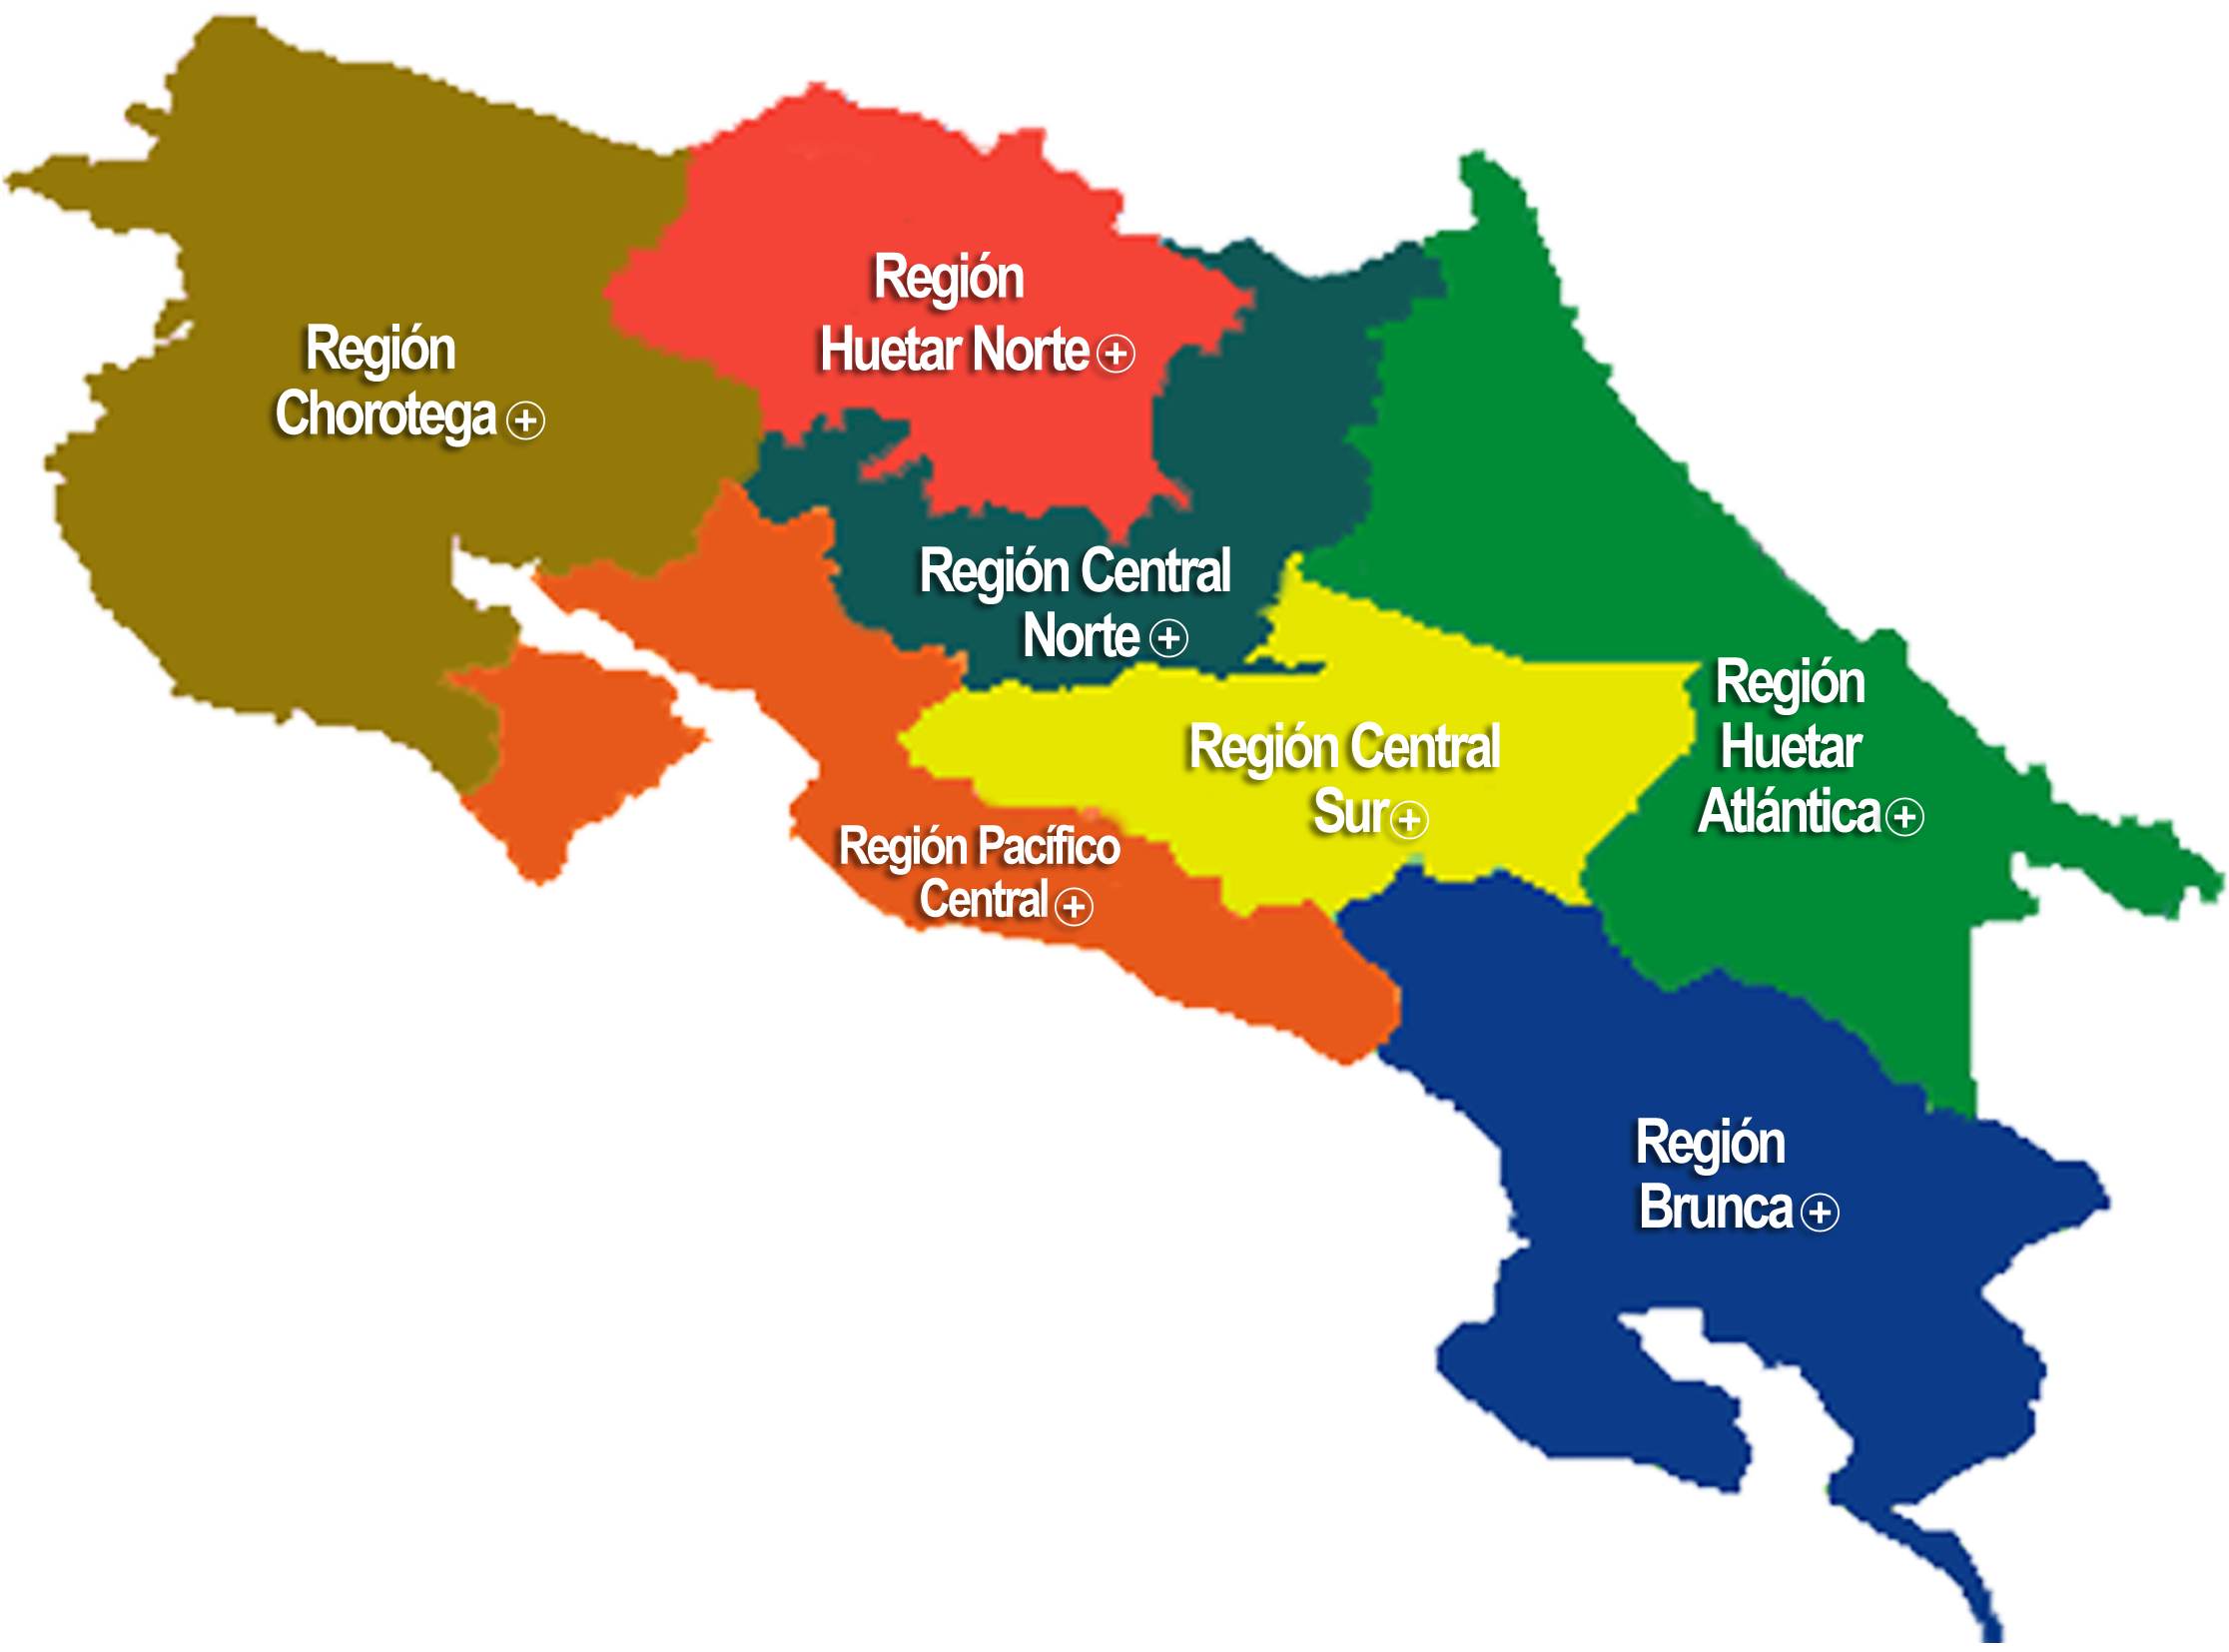 Central region